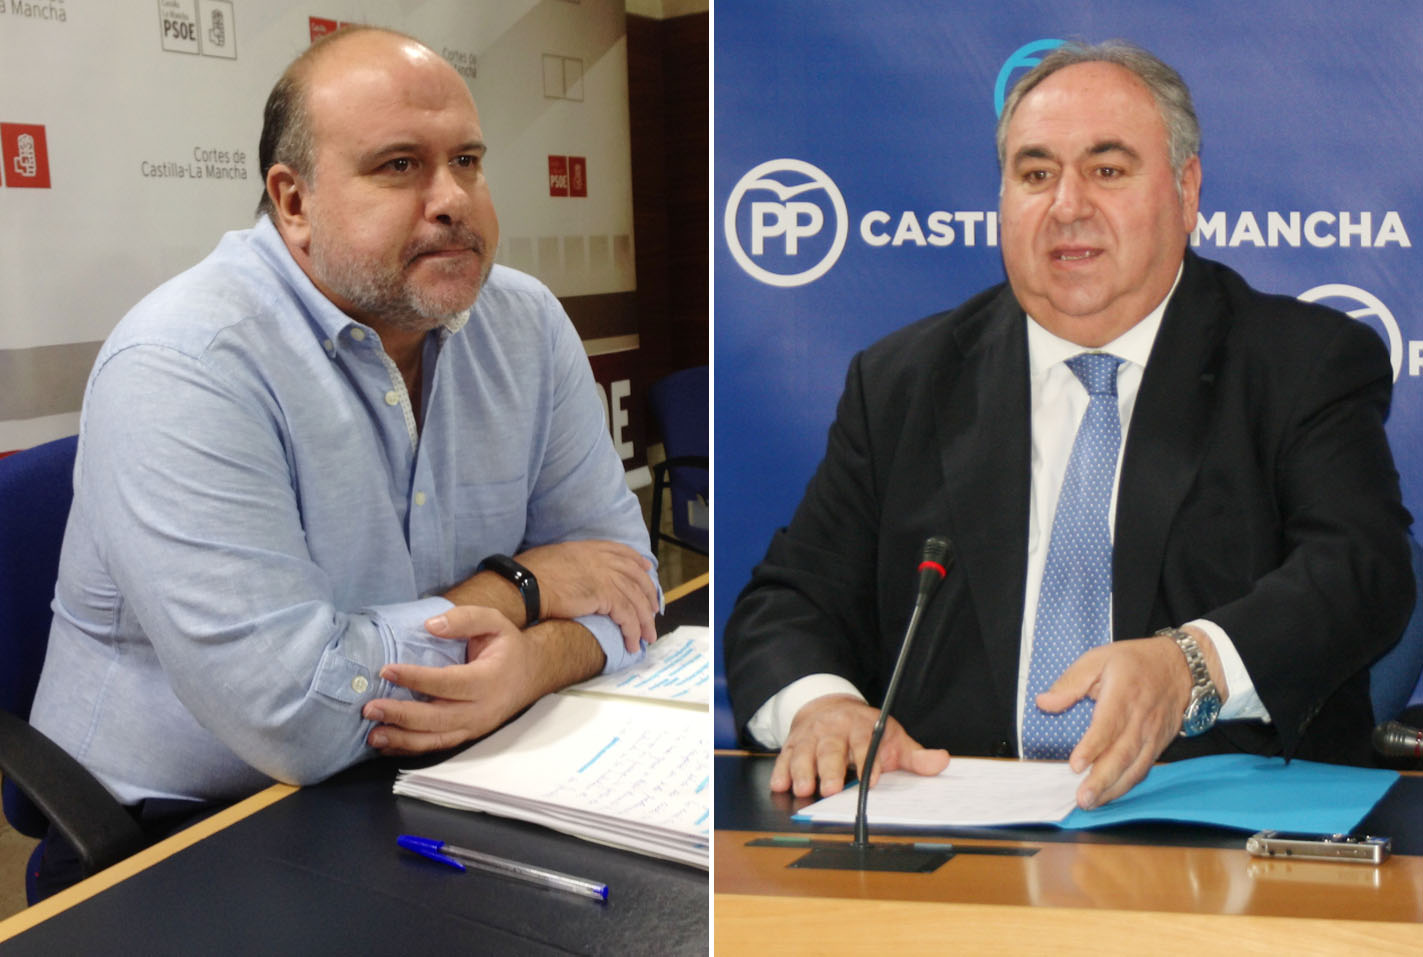 A la izquierda, el diputado regional del PSOE, Fausto Marín; a la derecha, el secretario general del PP de CLM, Vicente Tirado. Presupuestos